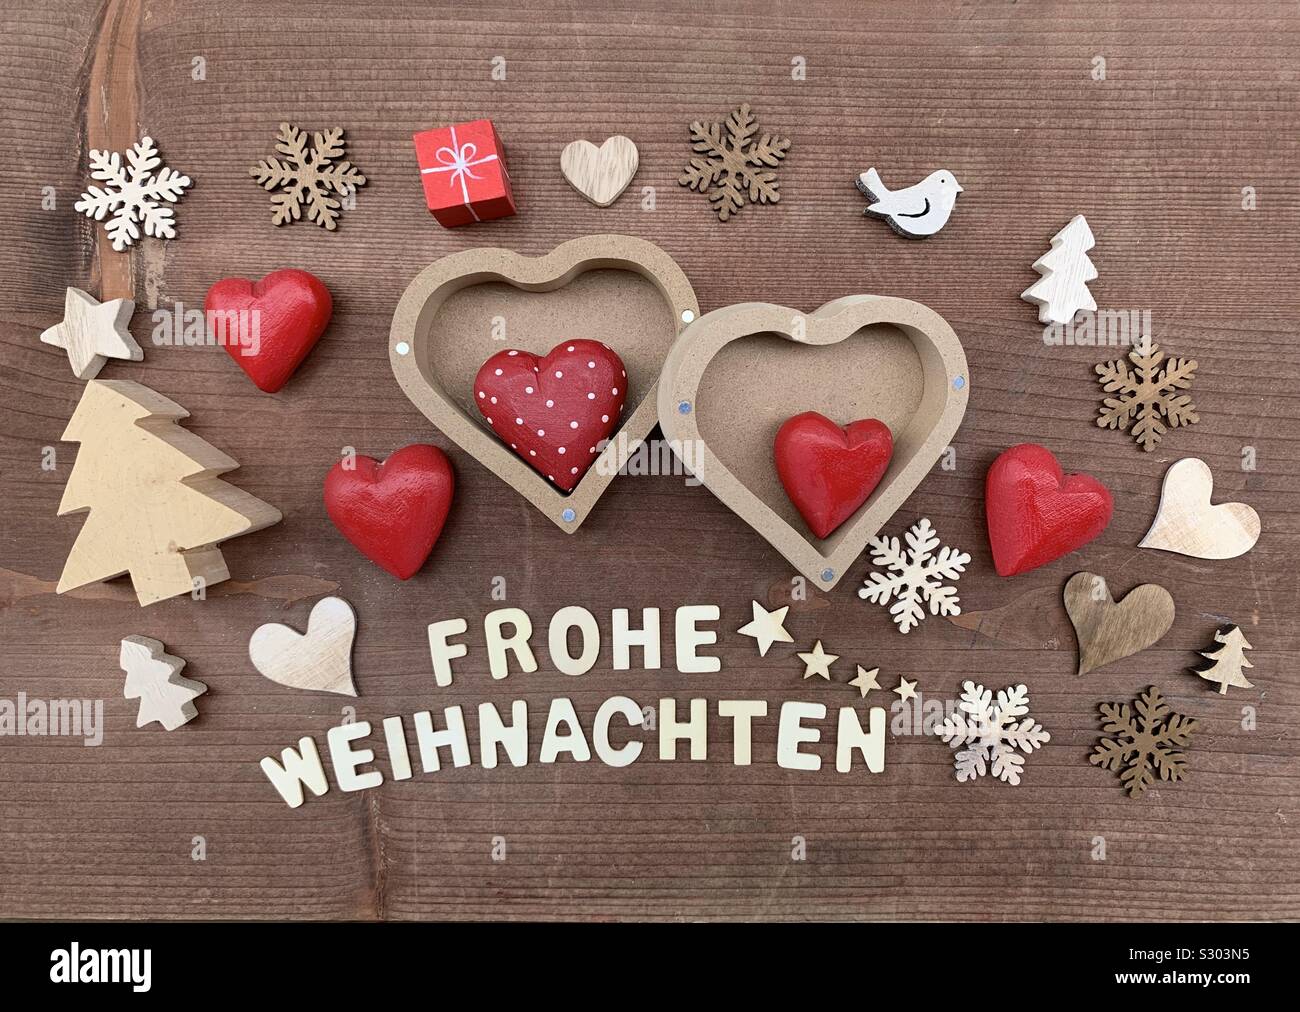 Frohe Weihnachten, Joyeux Noël avec des ornements en bois créatifs Banque D'Images